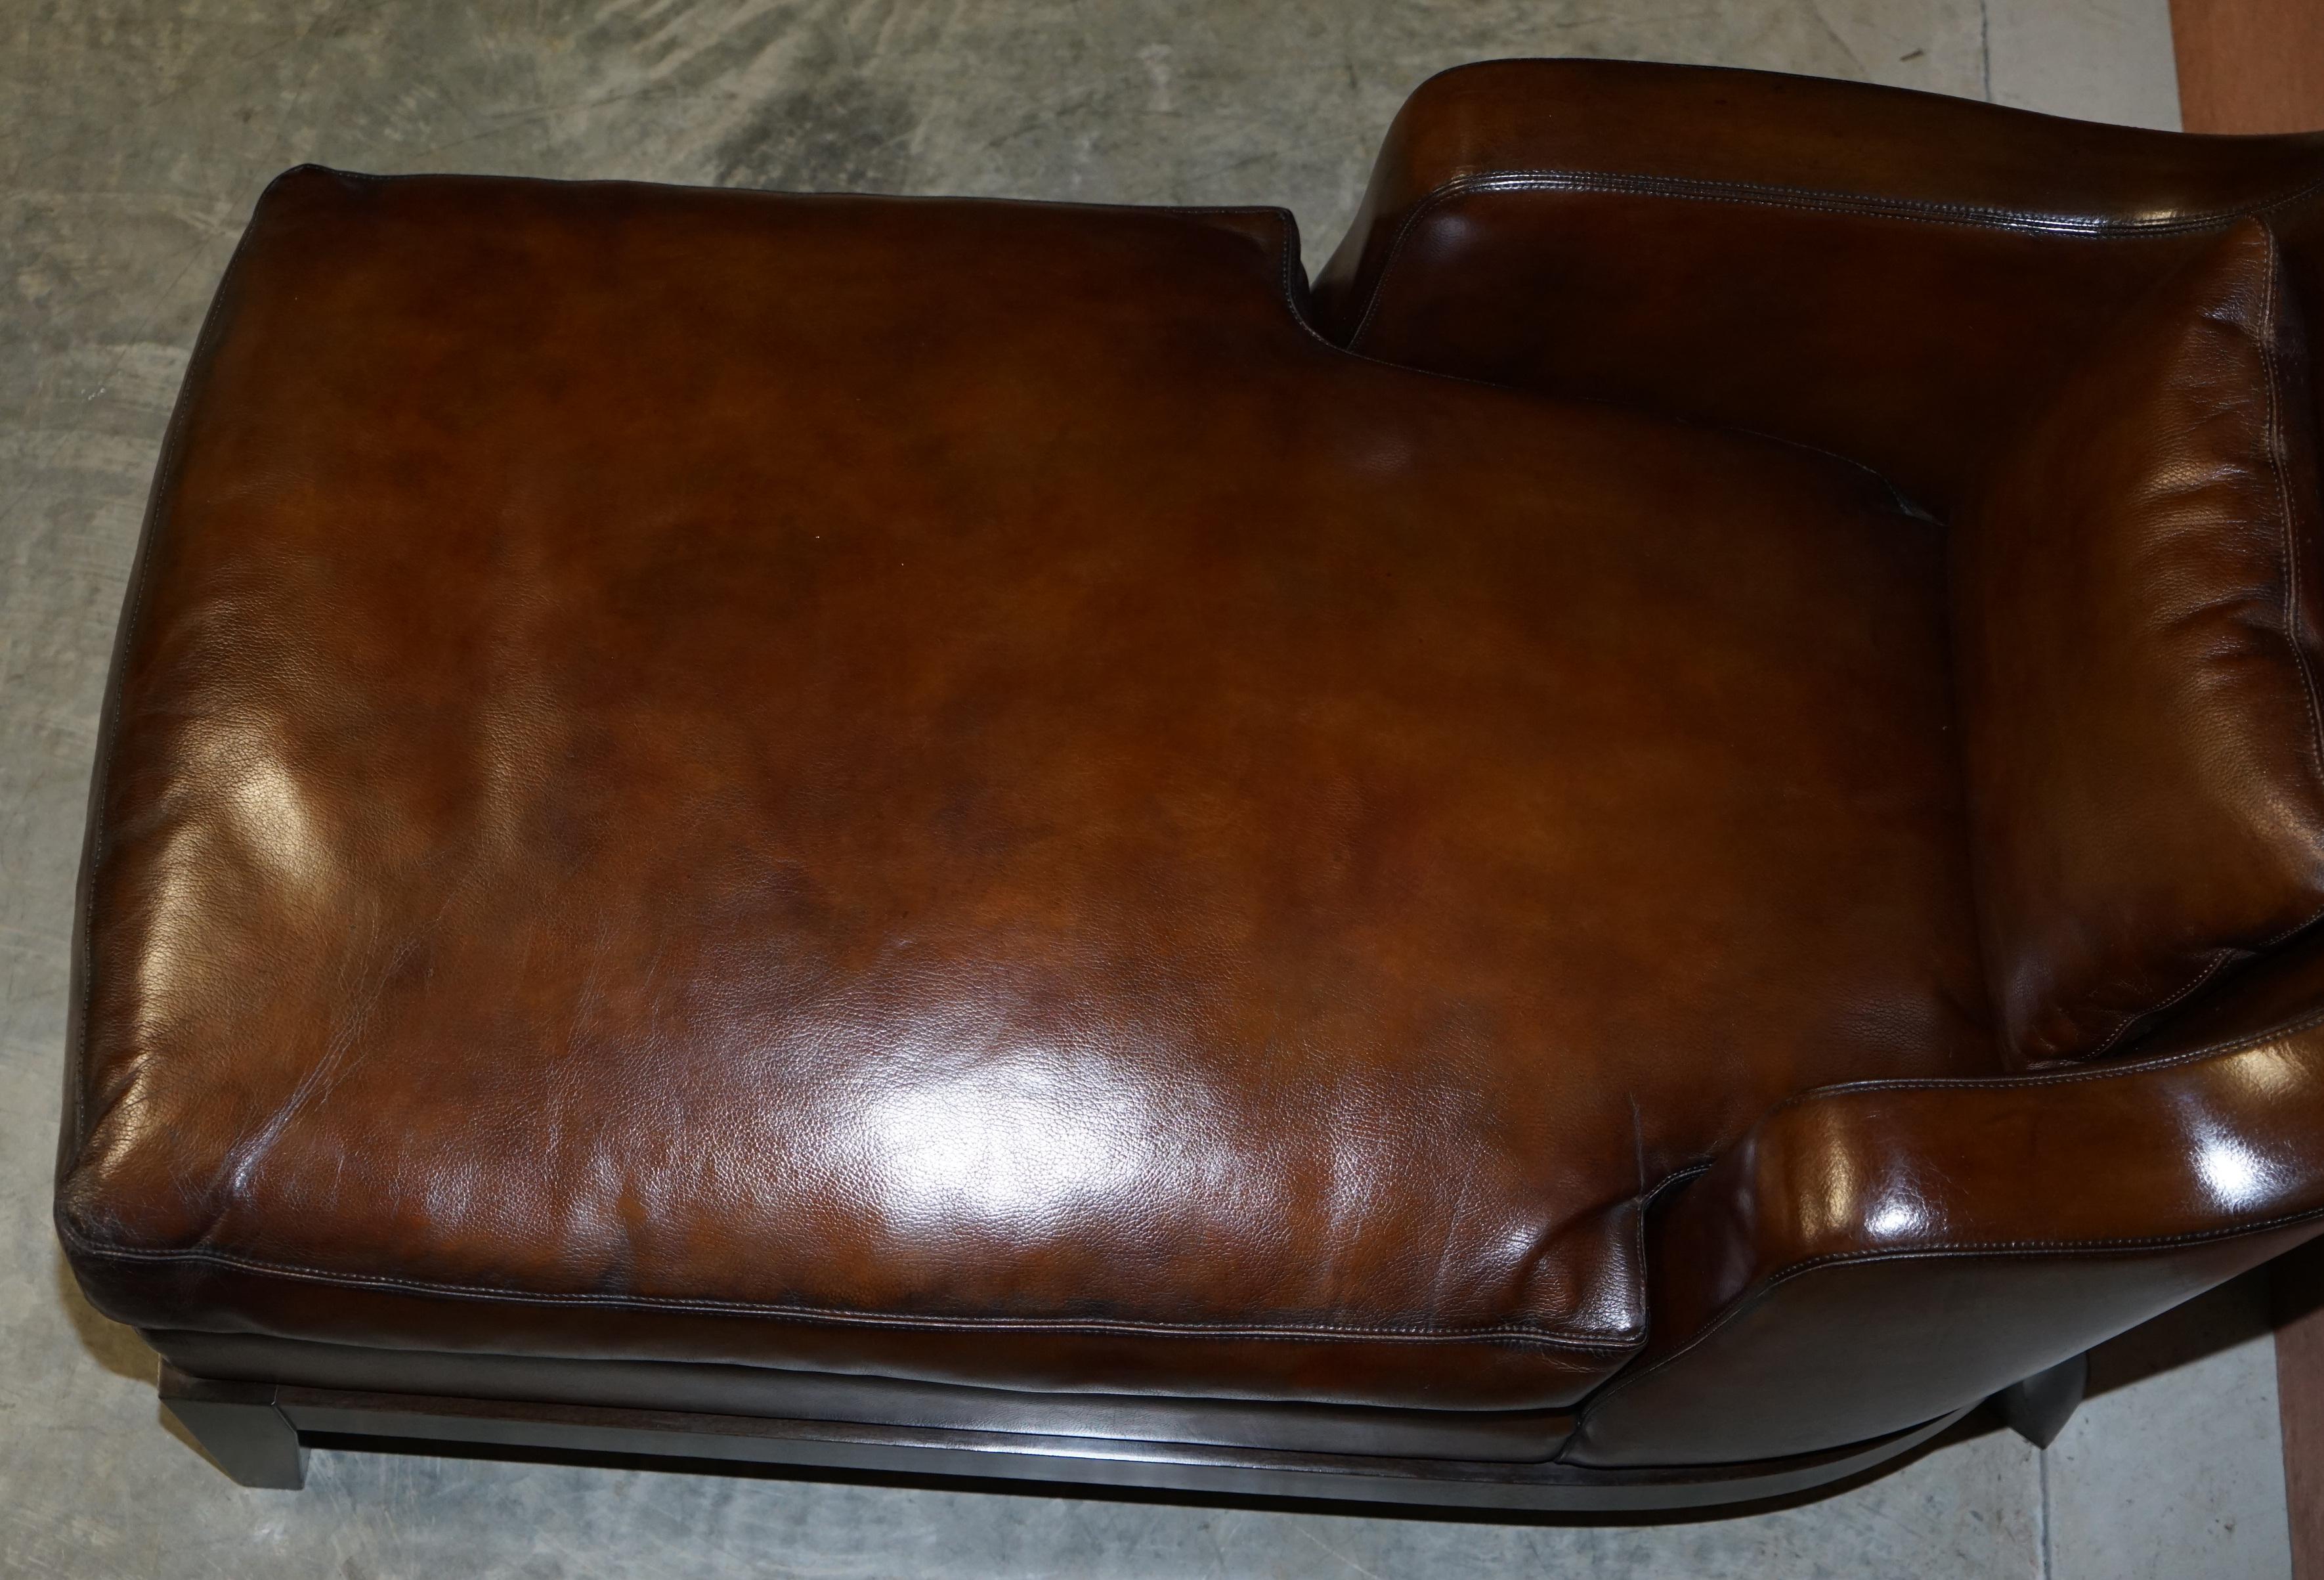 Rare Restored Promemoria Gioconda Italian Brown Leather Chaise Lounge Daybed For Sale 5